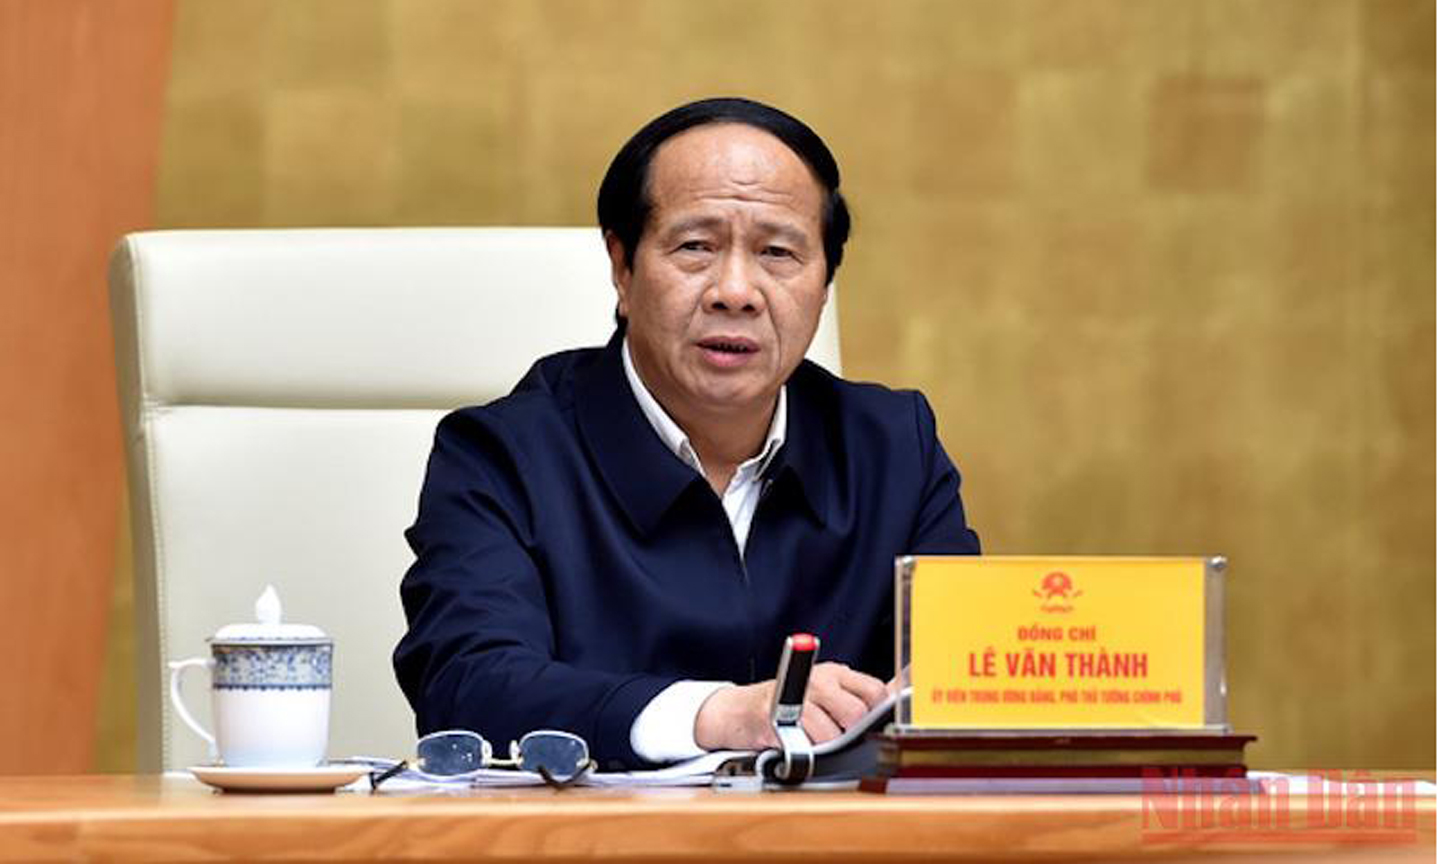 Phó Thủ tướng Lê Văn Thành chủ trì cuộc họp về các dự án kết cấu hạ tầng giao thông trong chương trình phục hồi kinh tế. (Ảnh: ĐỨC TUÂN)